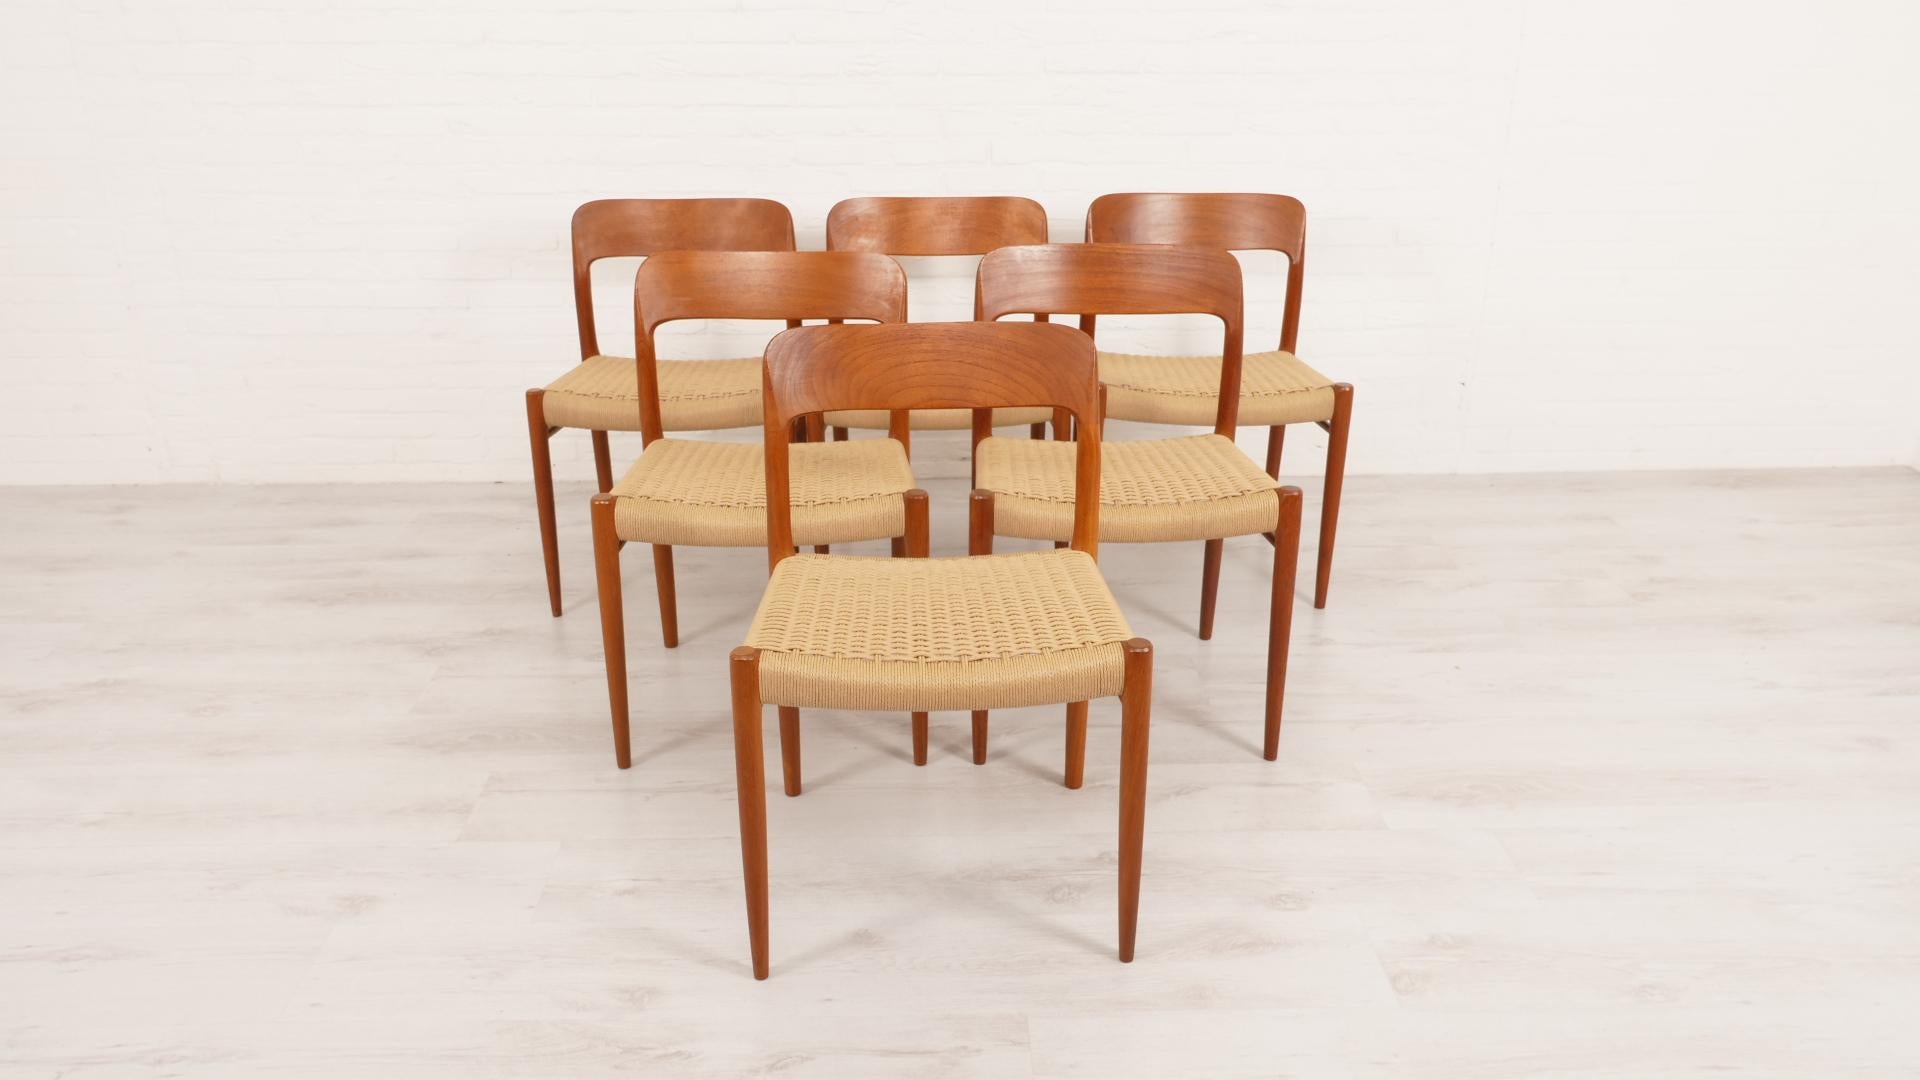 Satz von 6 schönen dänischen Vintage-Esszimmerstühlen. Diese Stühle wurden von Niels Otto Møller entworfen. Die Stühle sind aus Teakholz gefertigt und mit neuen Papierkordeln ausgestattet.

Zeitraum des Designs: 1950 - 1960
Stil: Moderne Mitte des